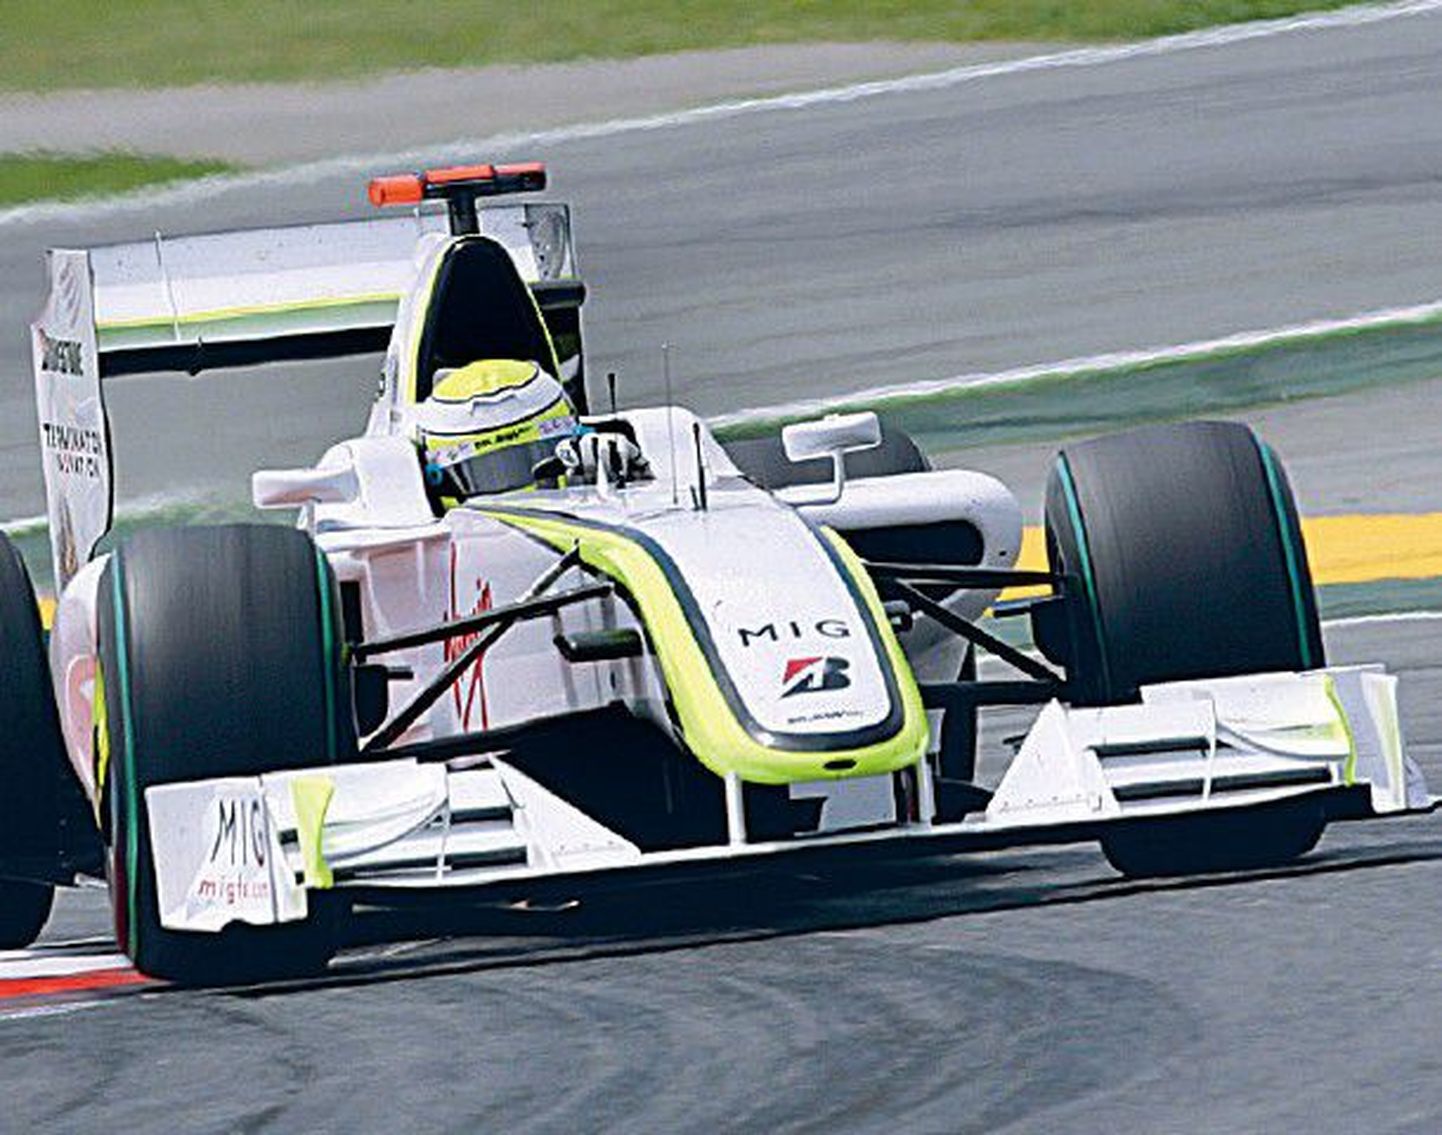 Vormel-1 MM-sarja praegune liider Jenson Button (Brawn GP).